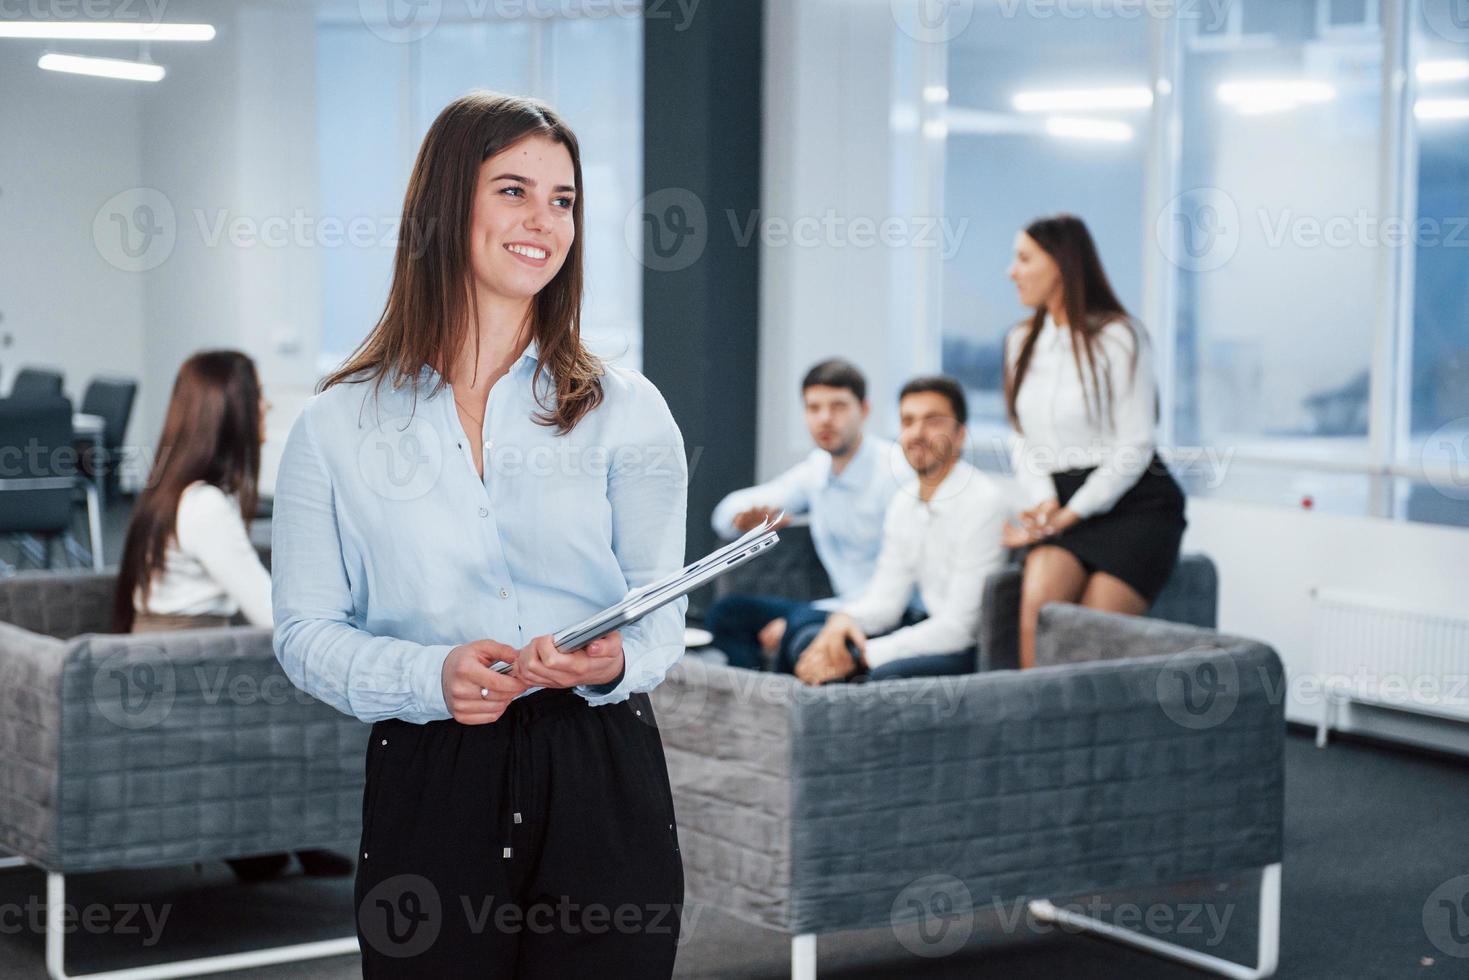 ler och tittar åt sidan. porträtt av ung flicka står på kontoret med anställda i bakgrunden foto